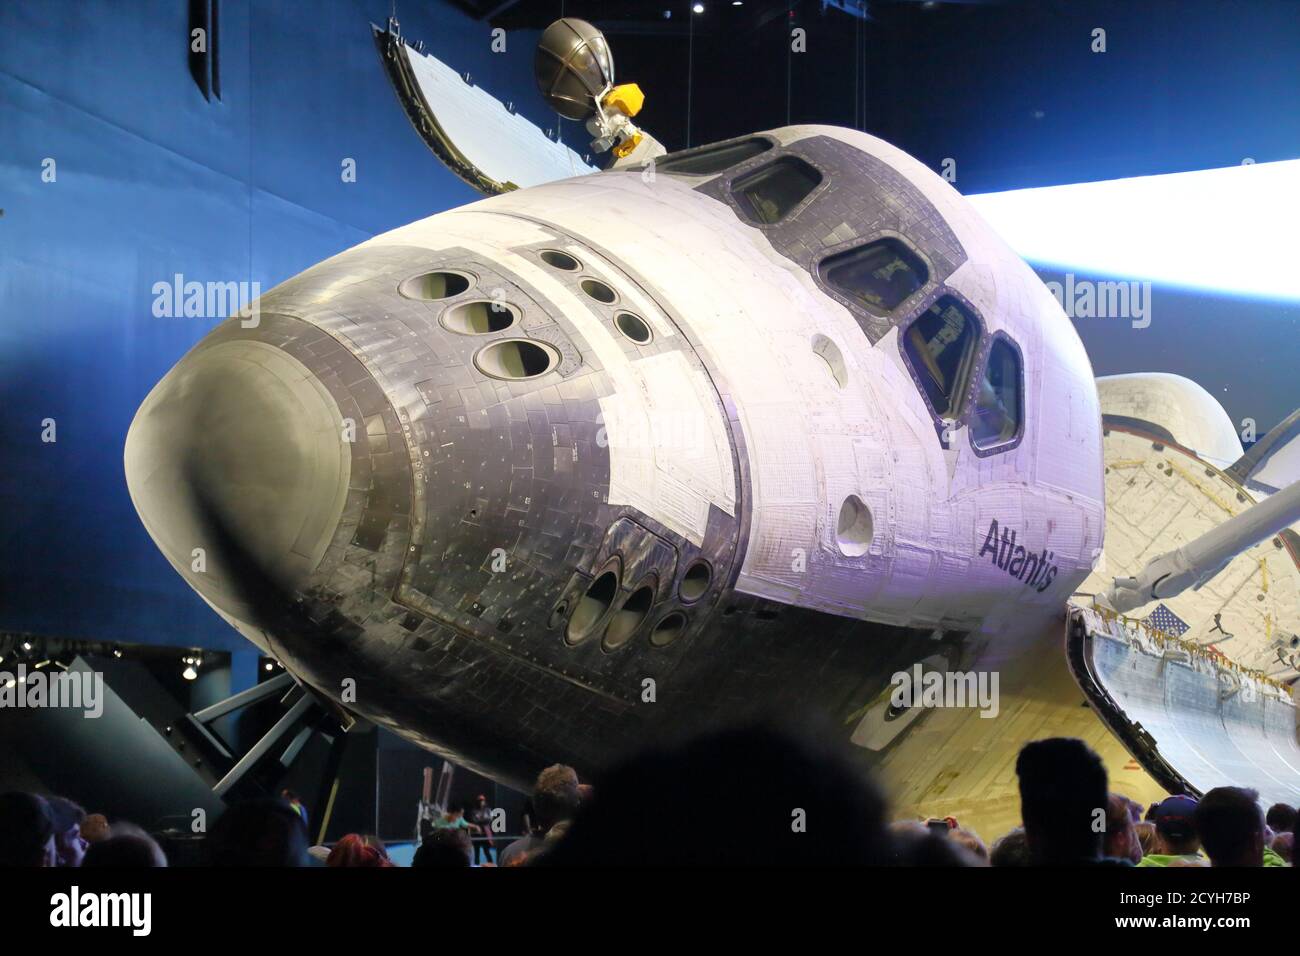 Uno Space Shuttle che dimostra la tecnologia spaziale della NASA al Kennedy Space Center, Cape Canaveral, USA Foto Stock